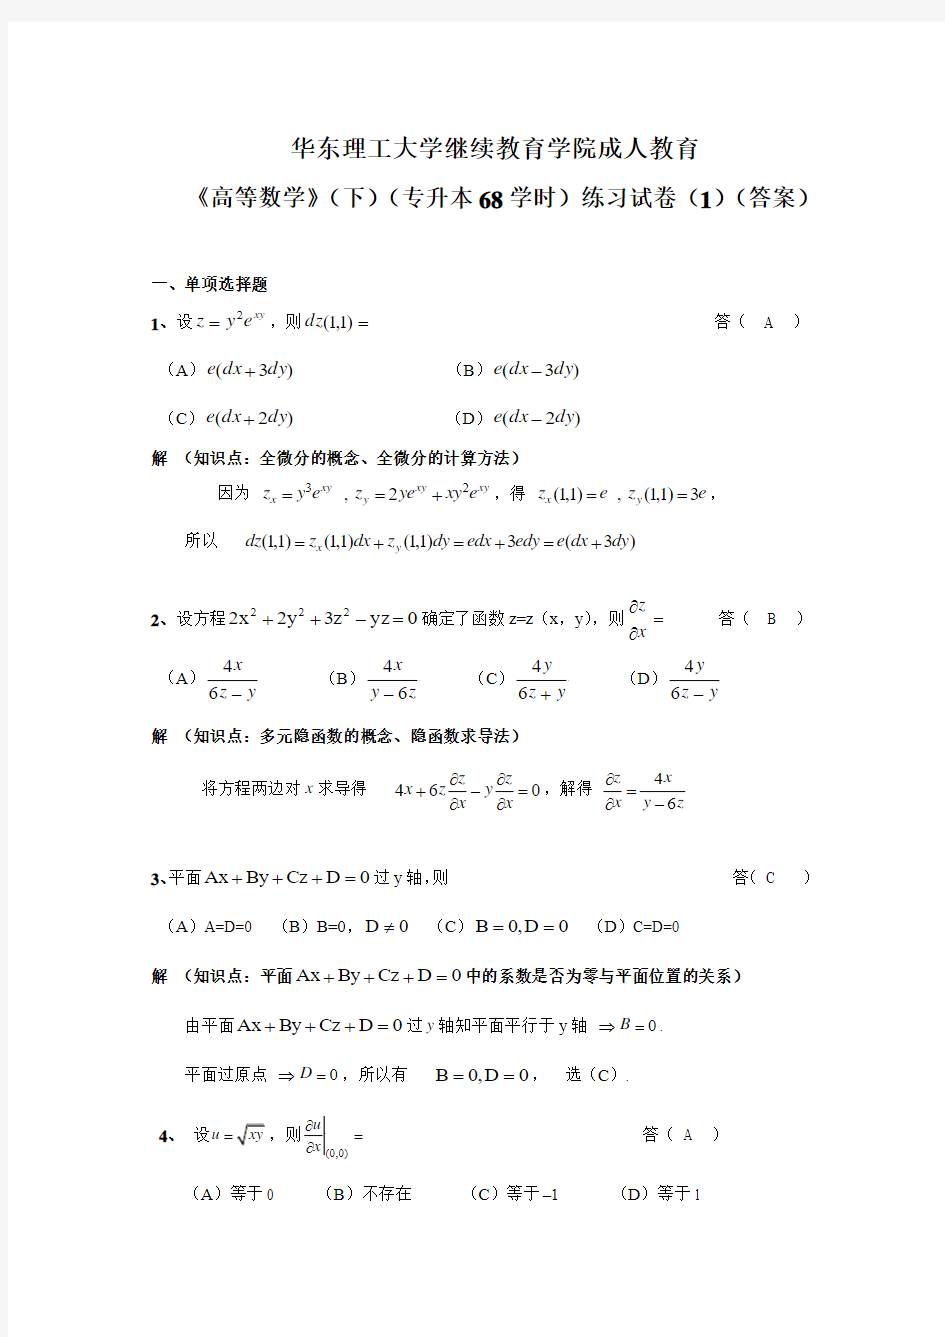 华东理工大学继续教育学院《高等数学》(下)练习试卷(1)(答案)